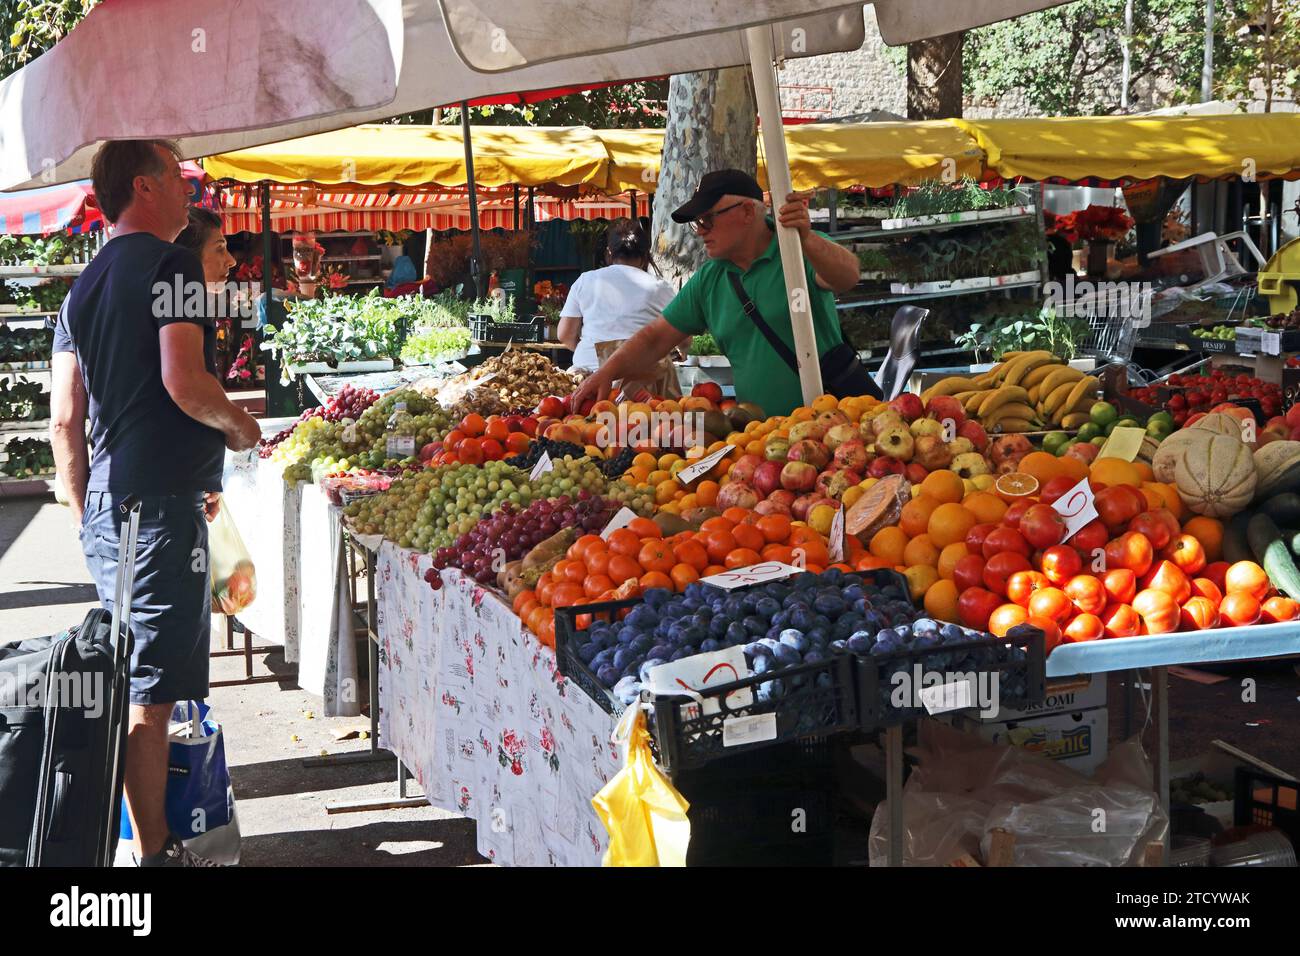 Obststand auf dem Markt im Freien, Split, Kroatien Stockfoto